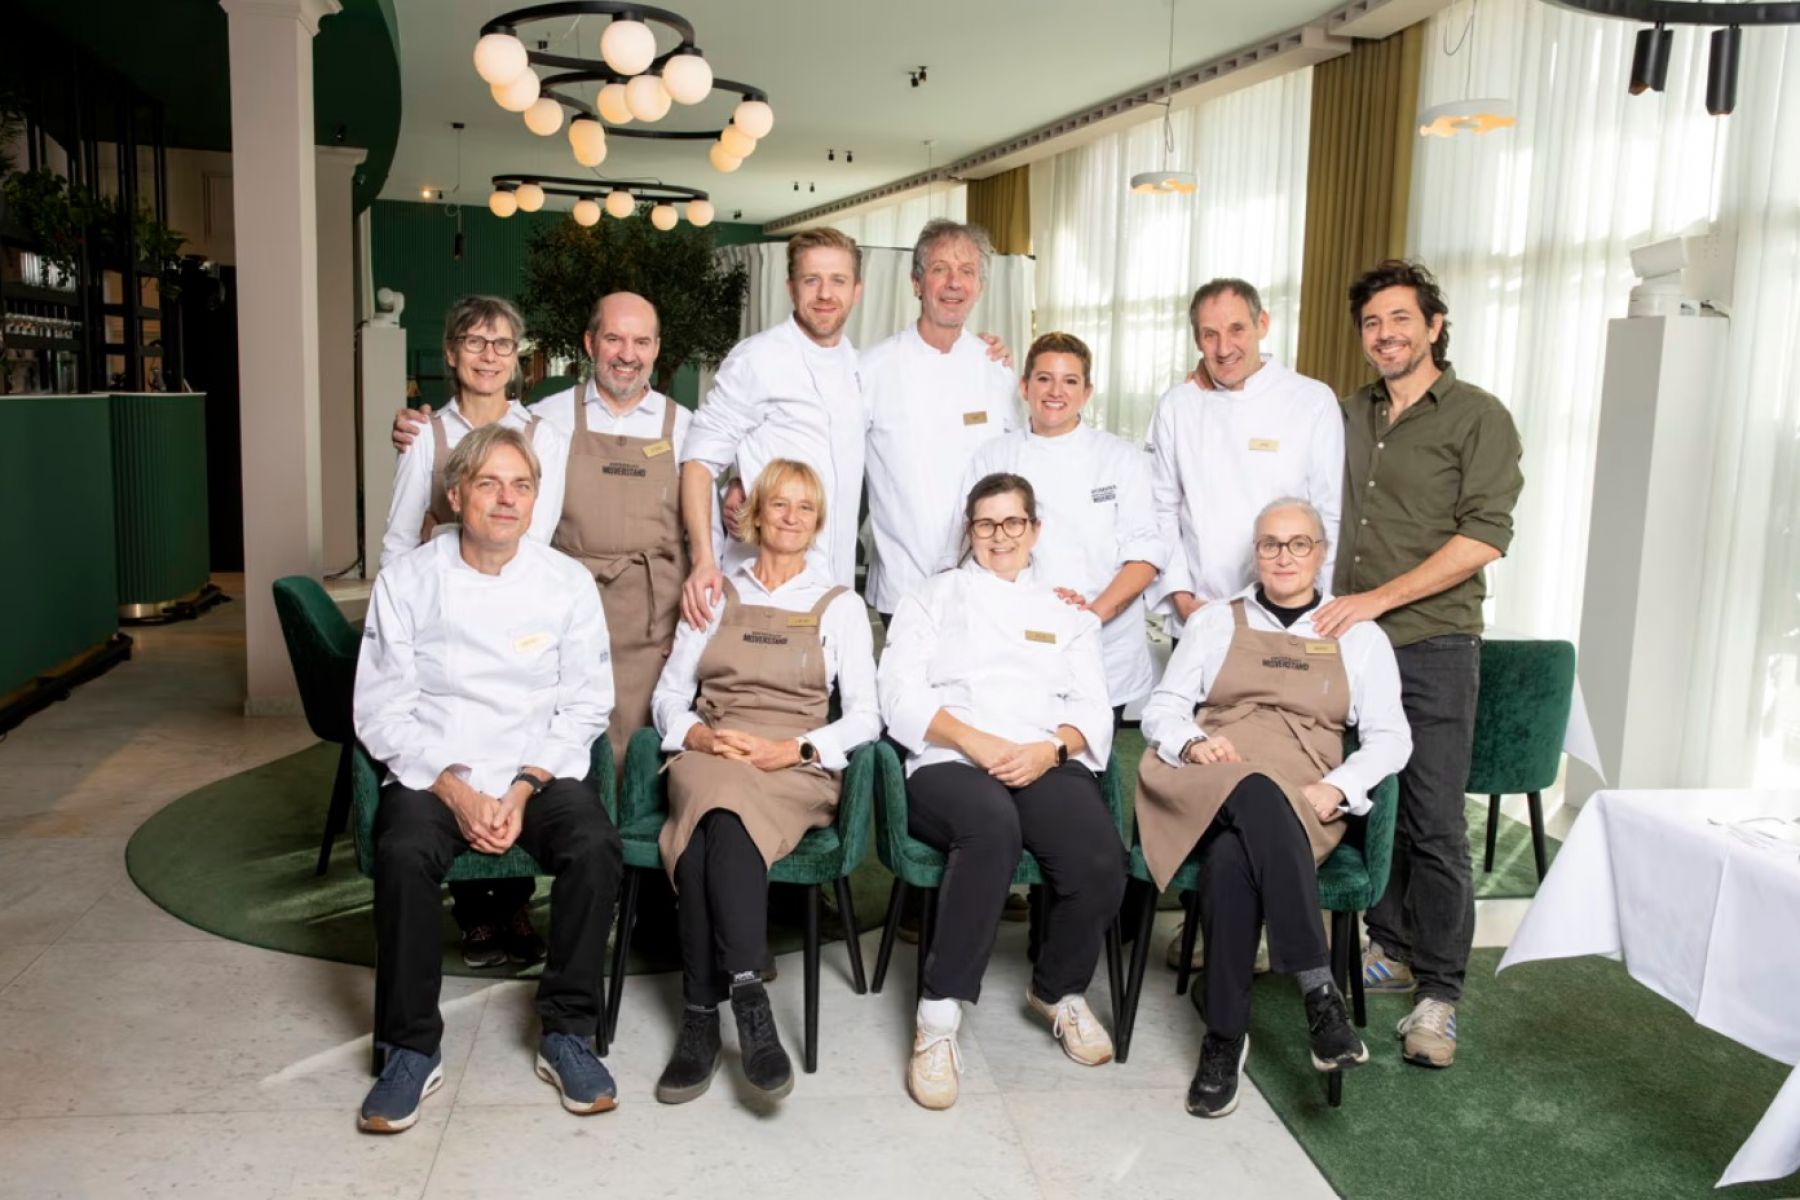 Восемь новых сотрудников открывают ресторан Misverstand Aan Zee вместе с Дитером Куппенсом